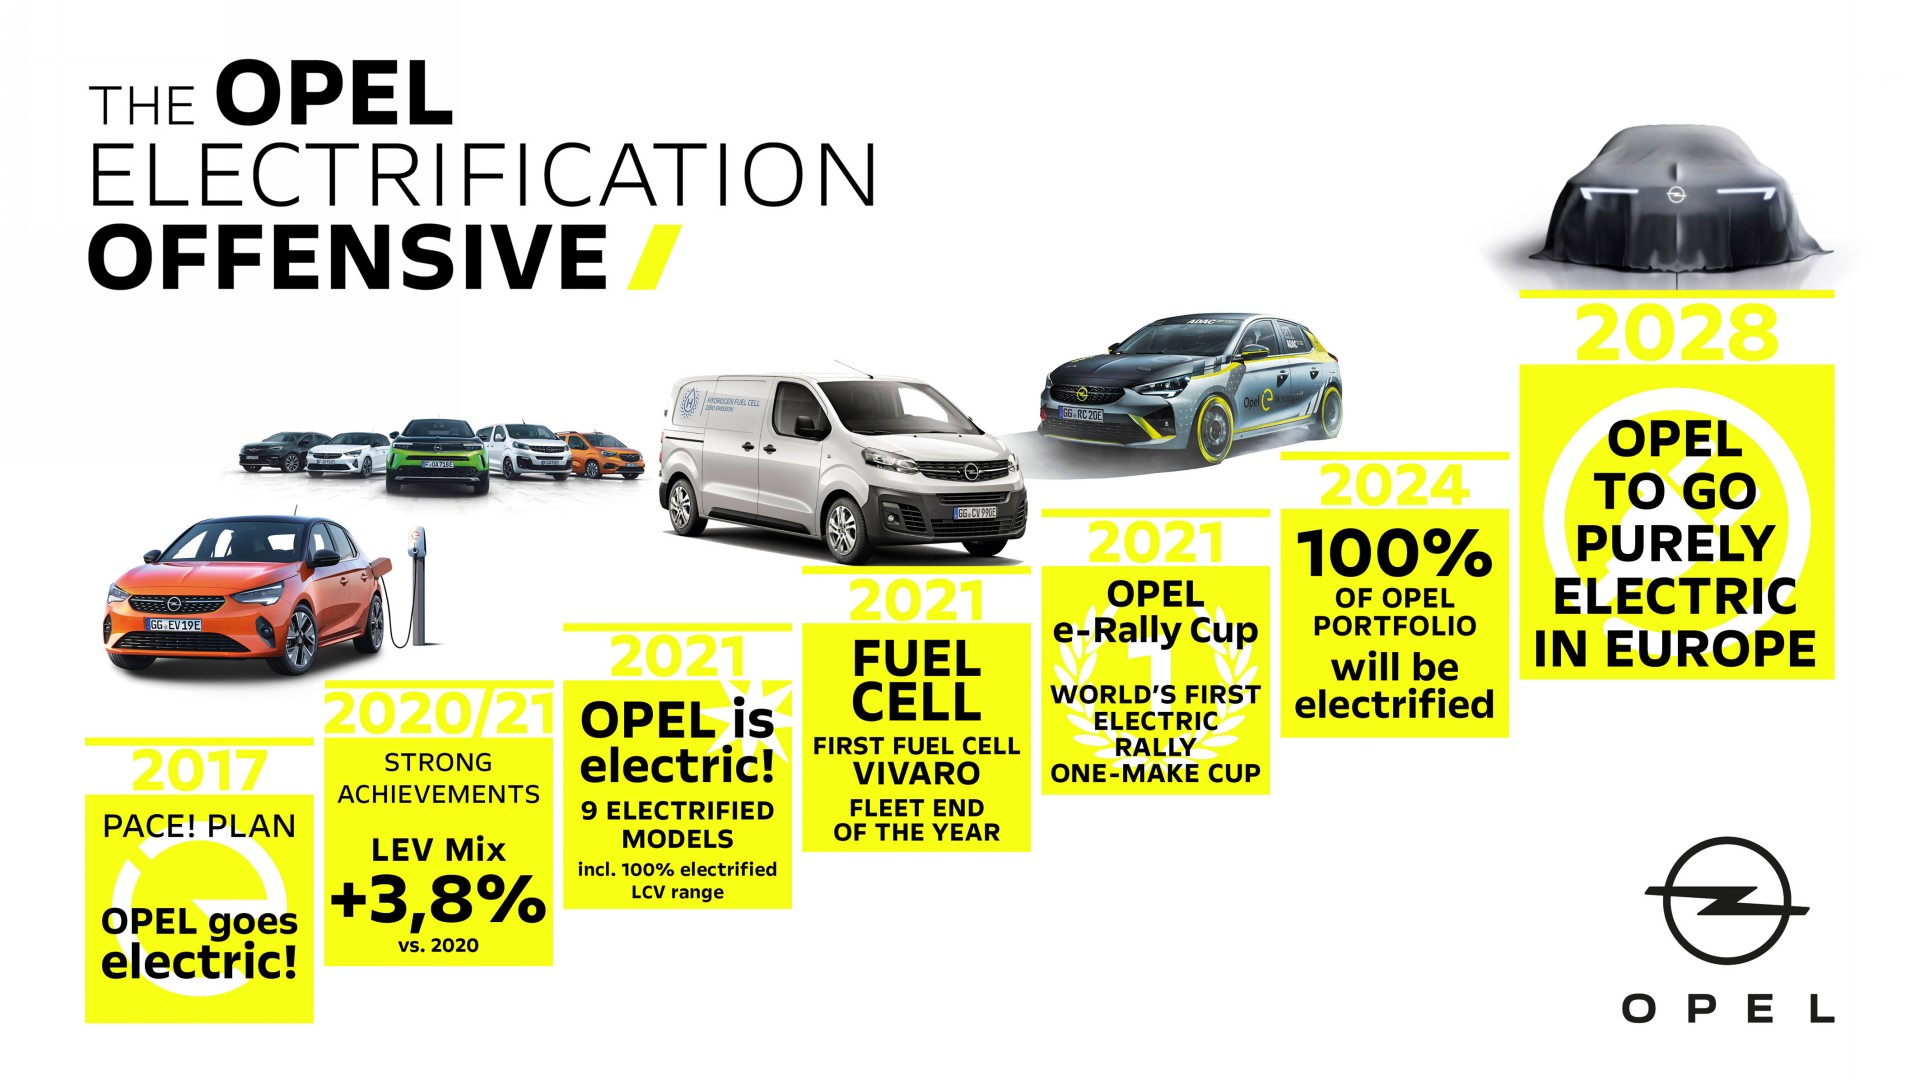 En 2028, la gama de Opel será completamente eléctrica